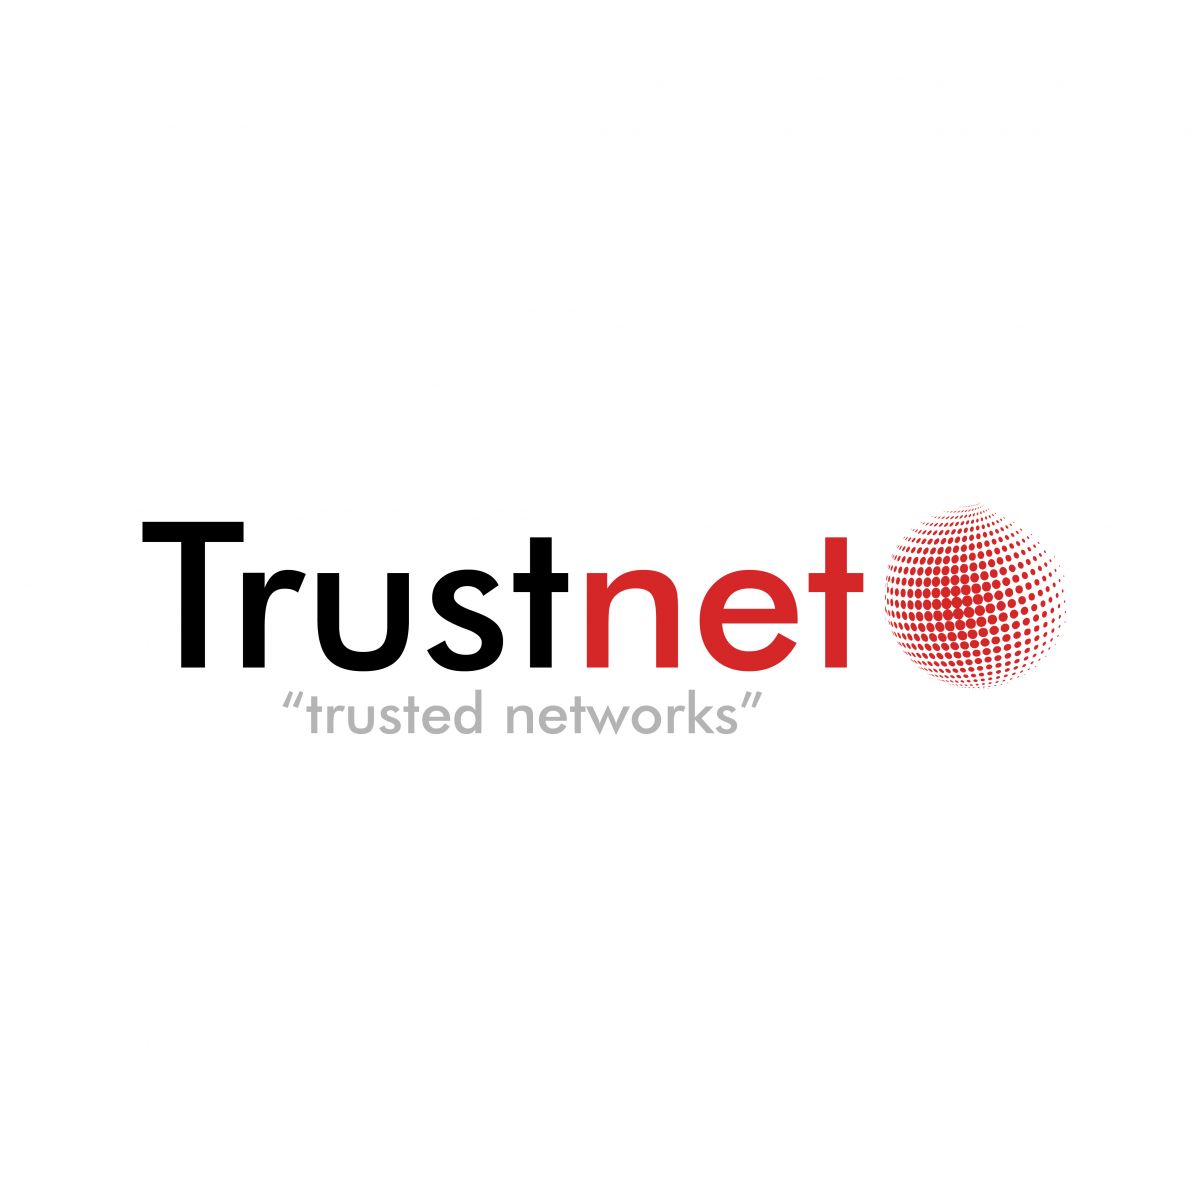 Trustnet